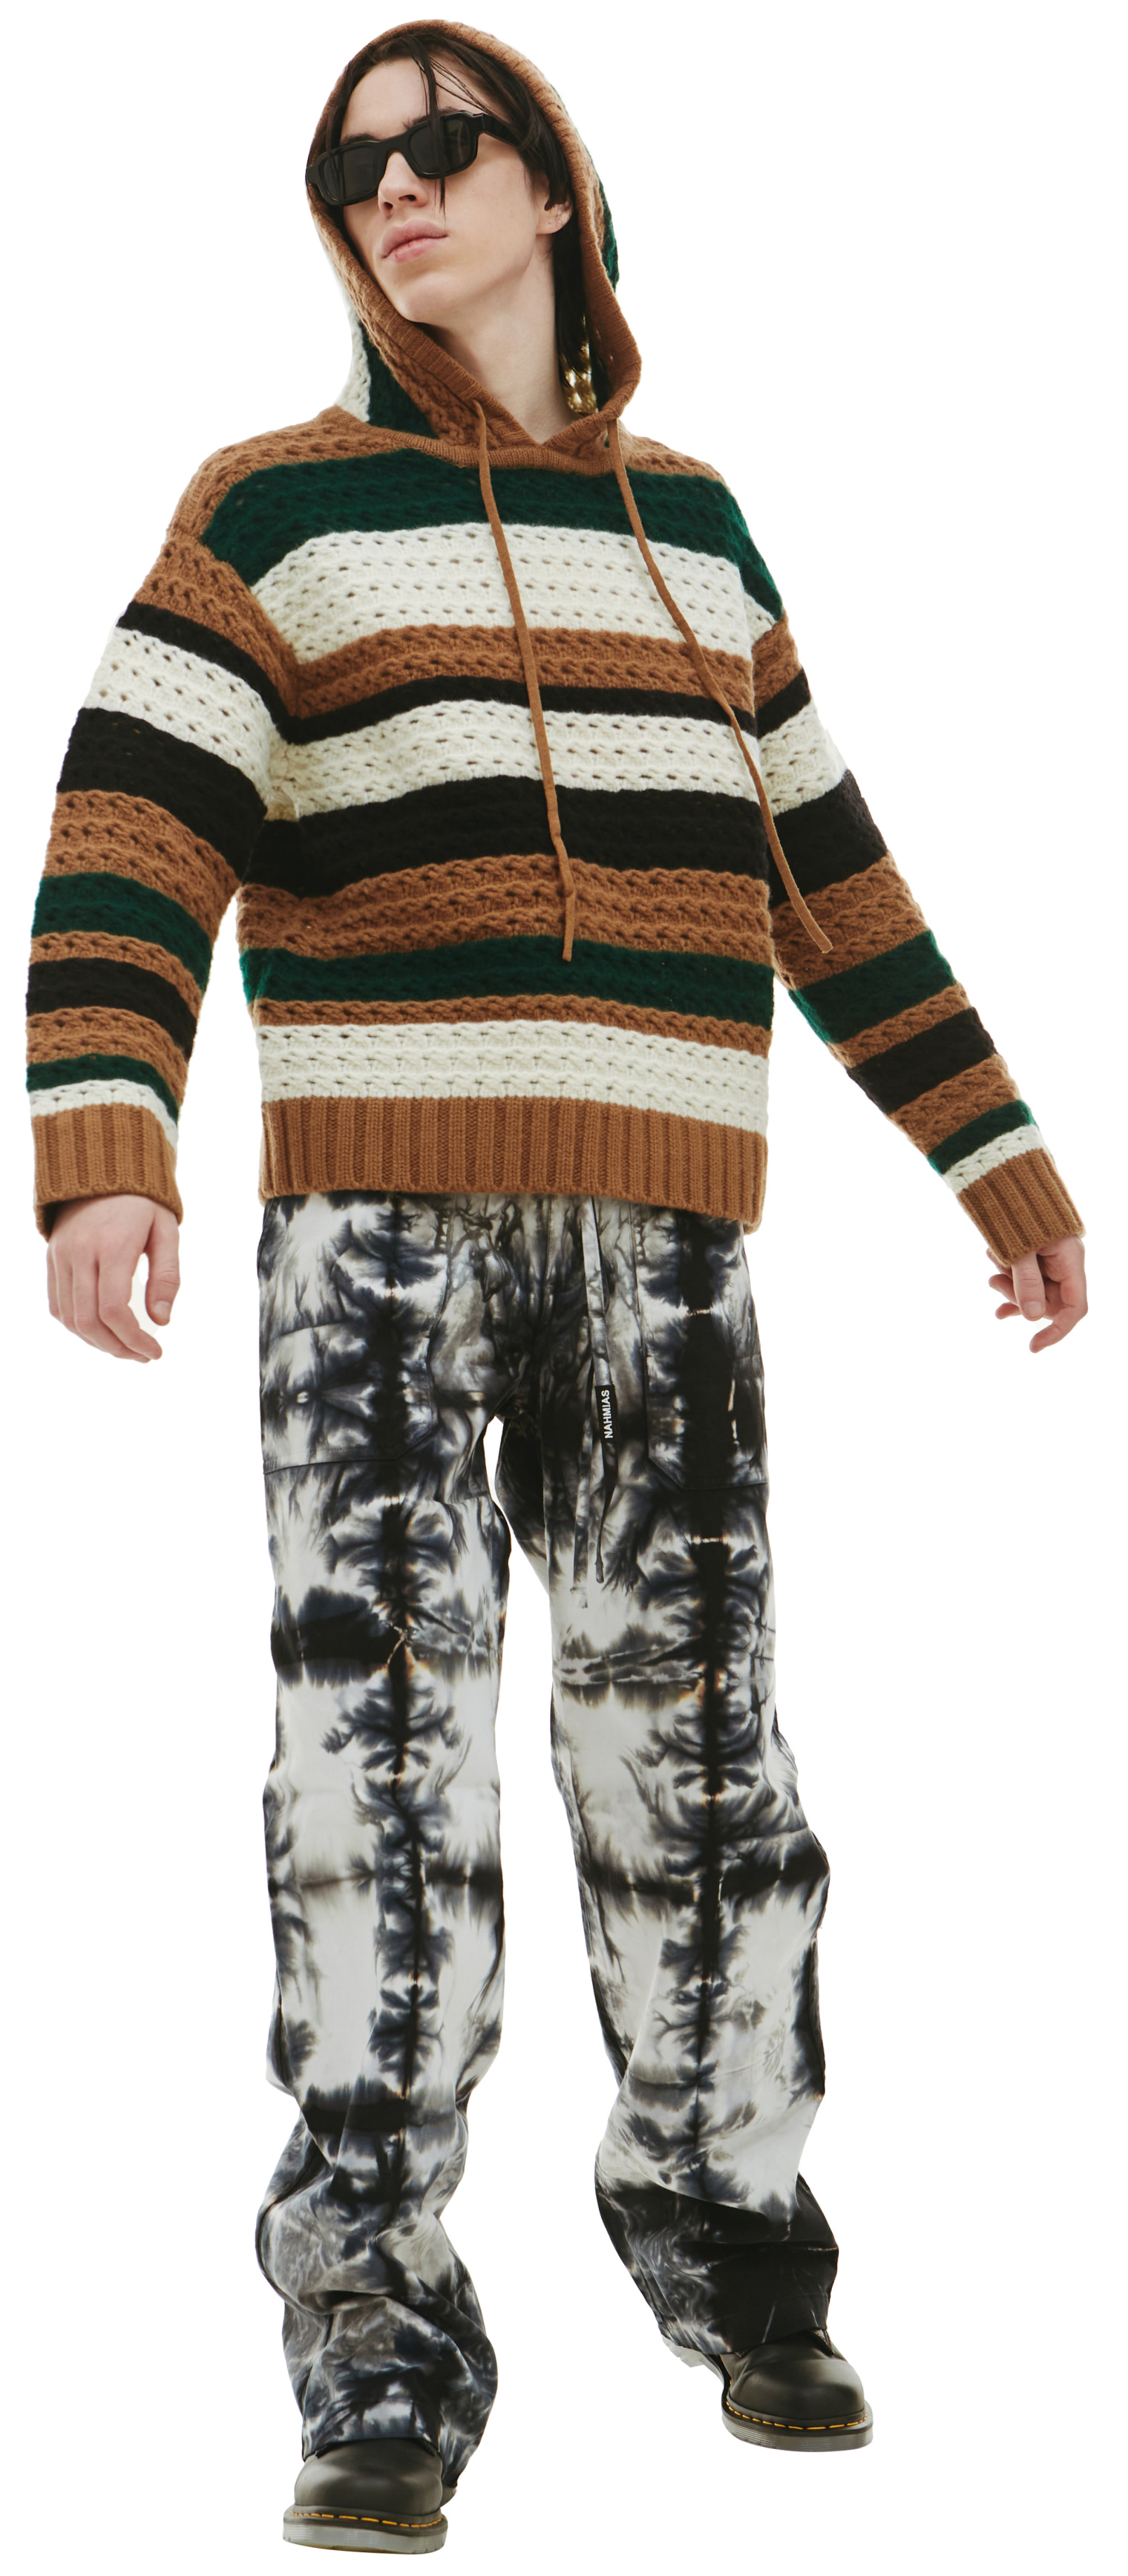 Nahmias Crochet hoodie